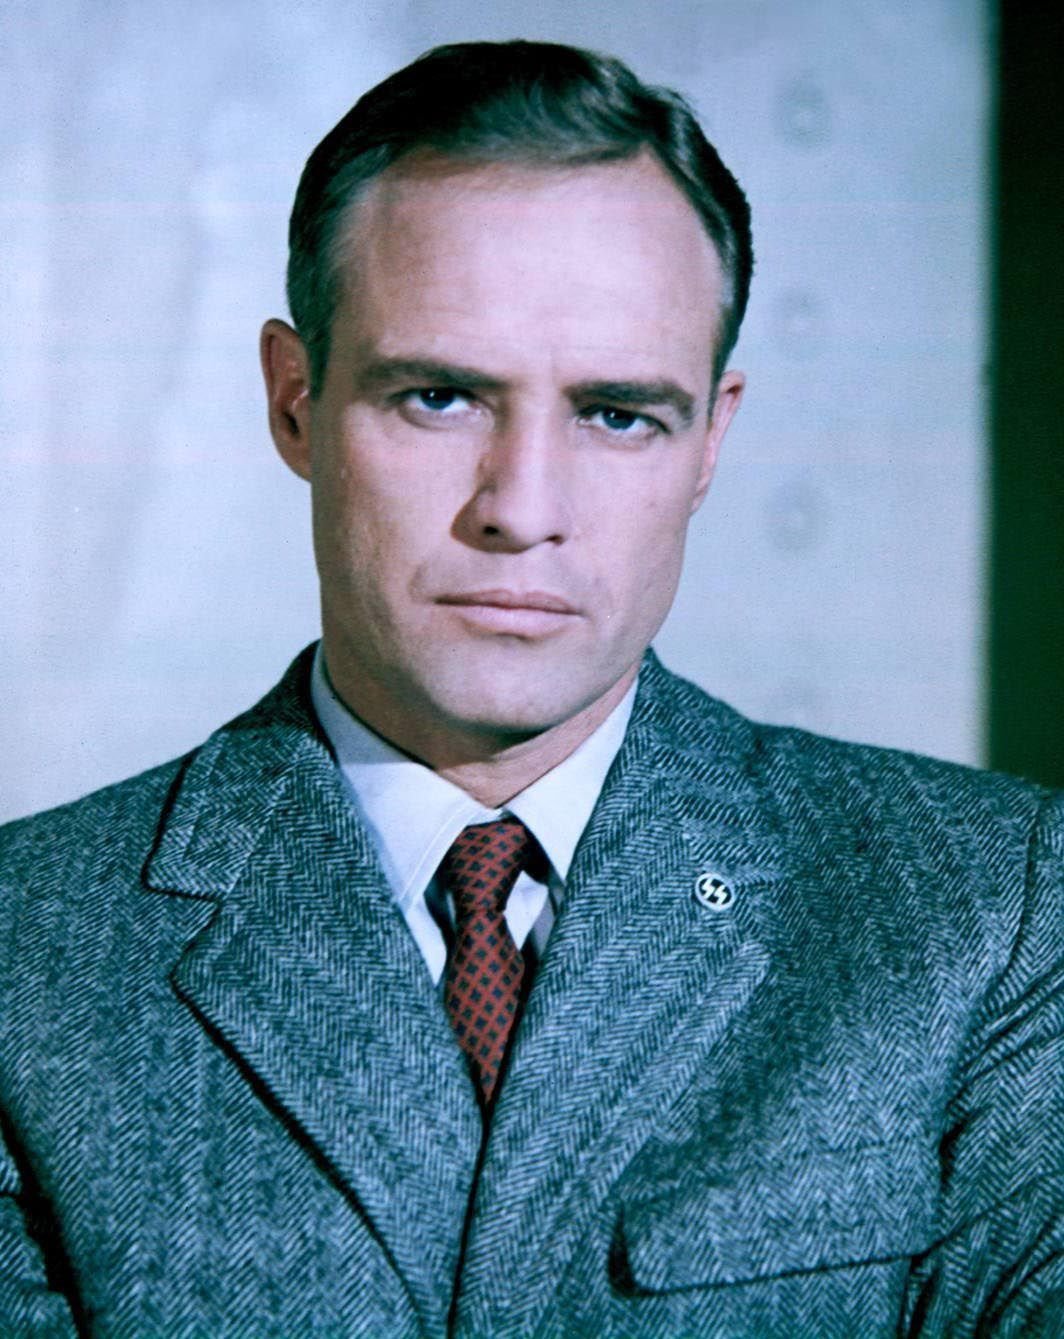 American Actor Marlon Brando,1967. | Source: Getty Images